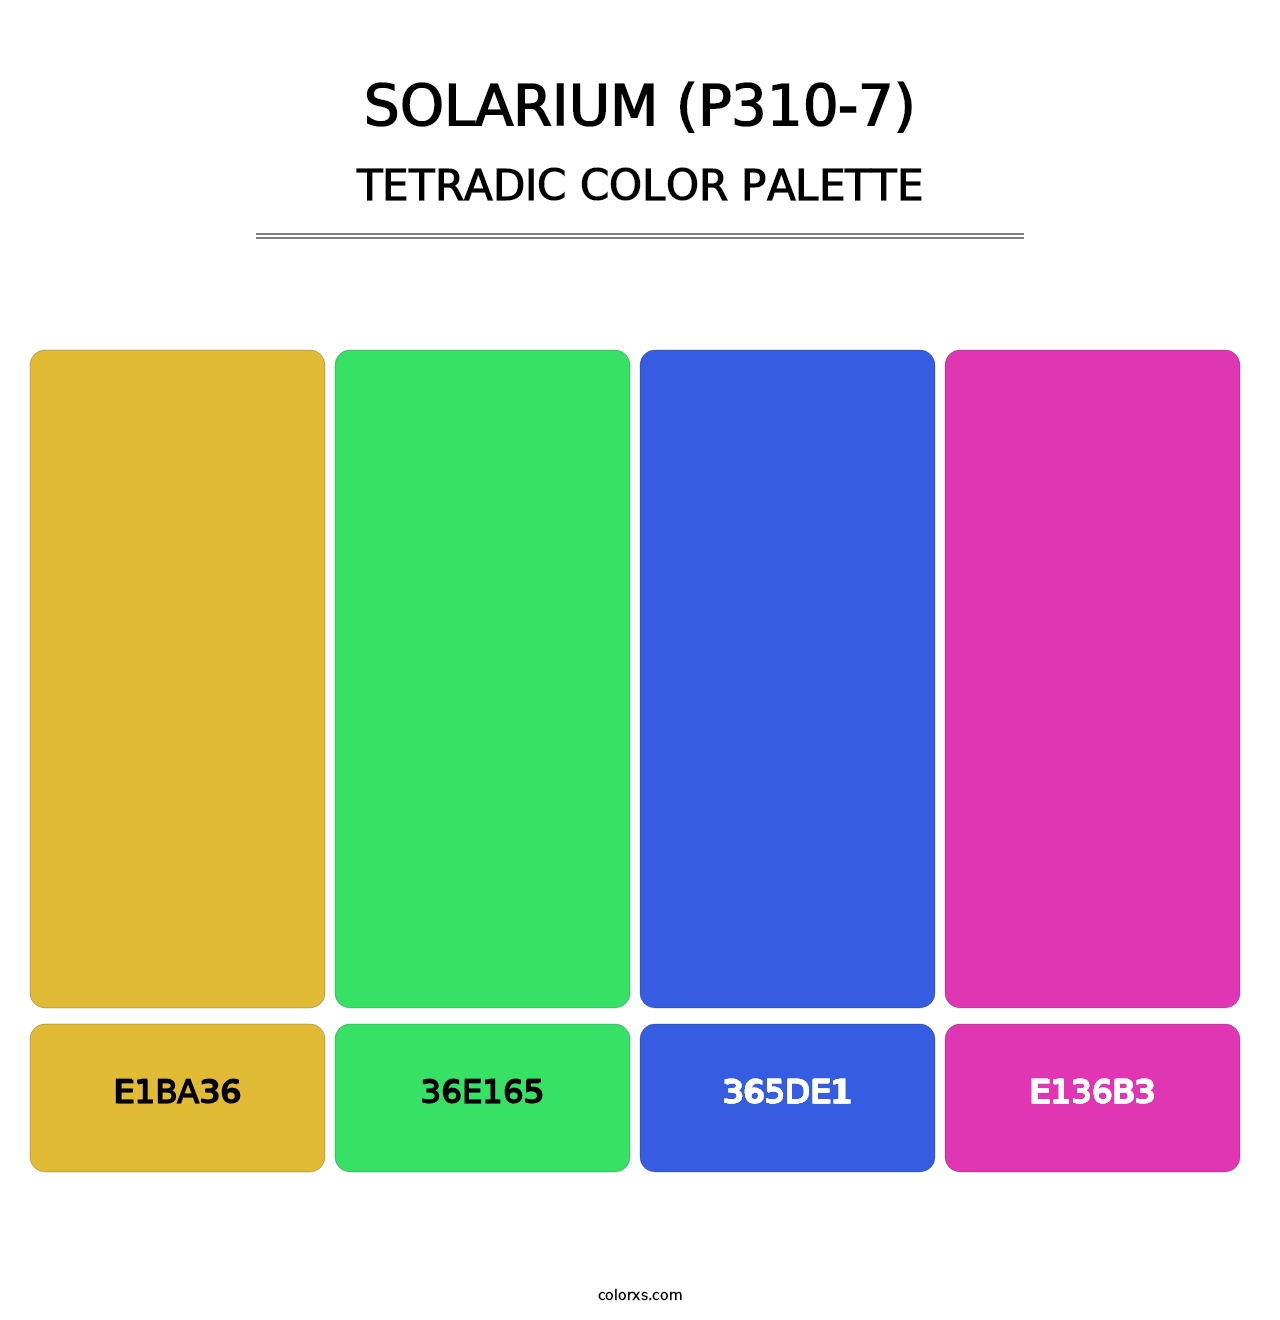 Solarium (P310-7) - Tetradic Color Palette